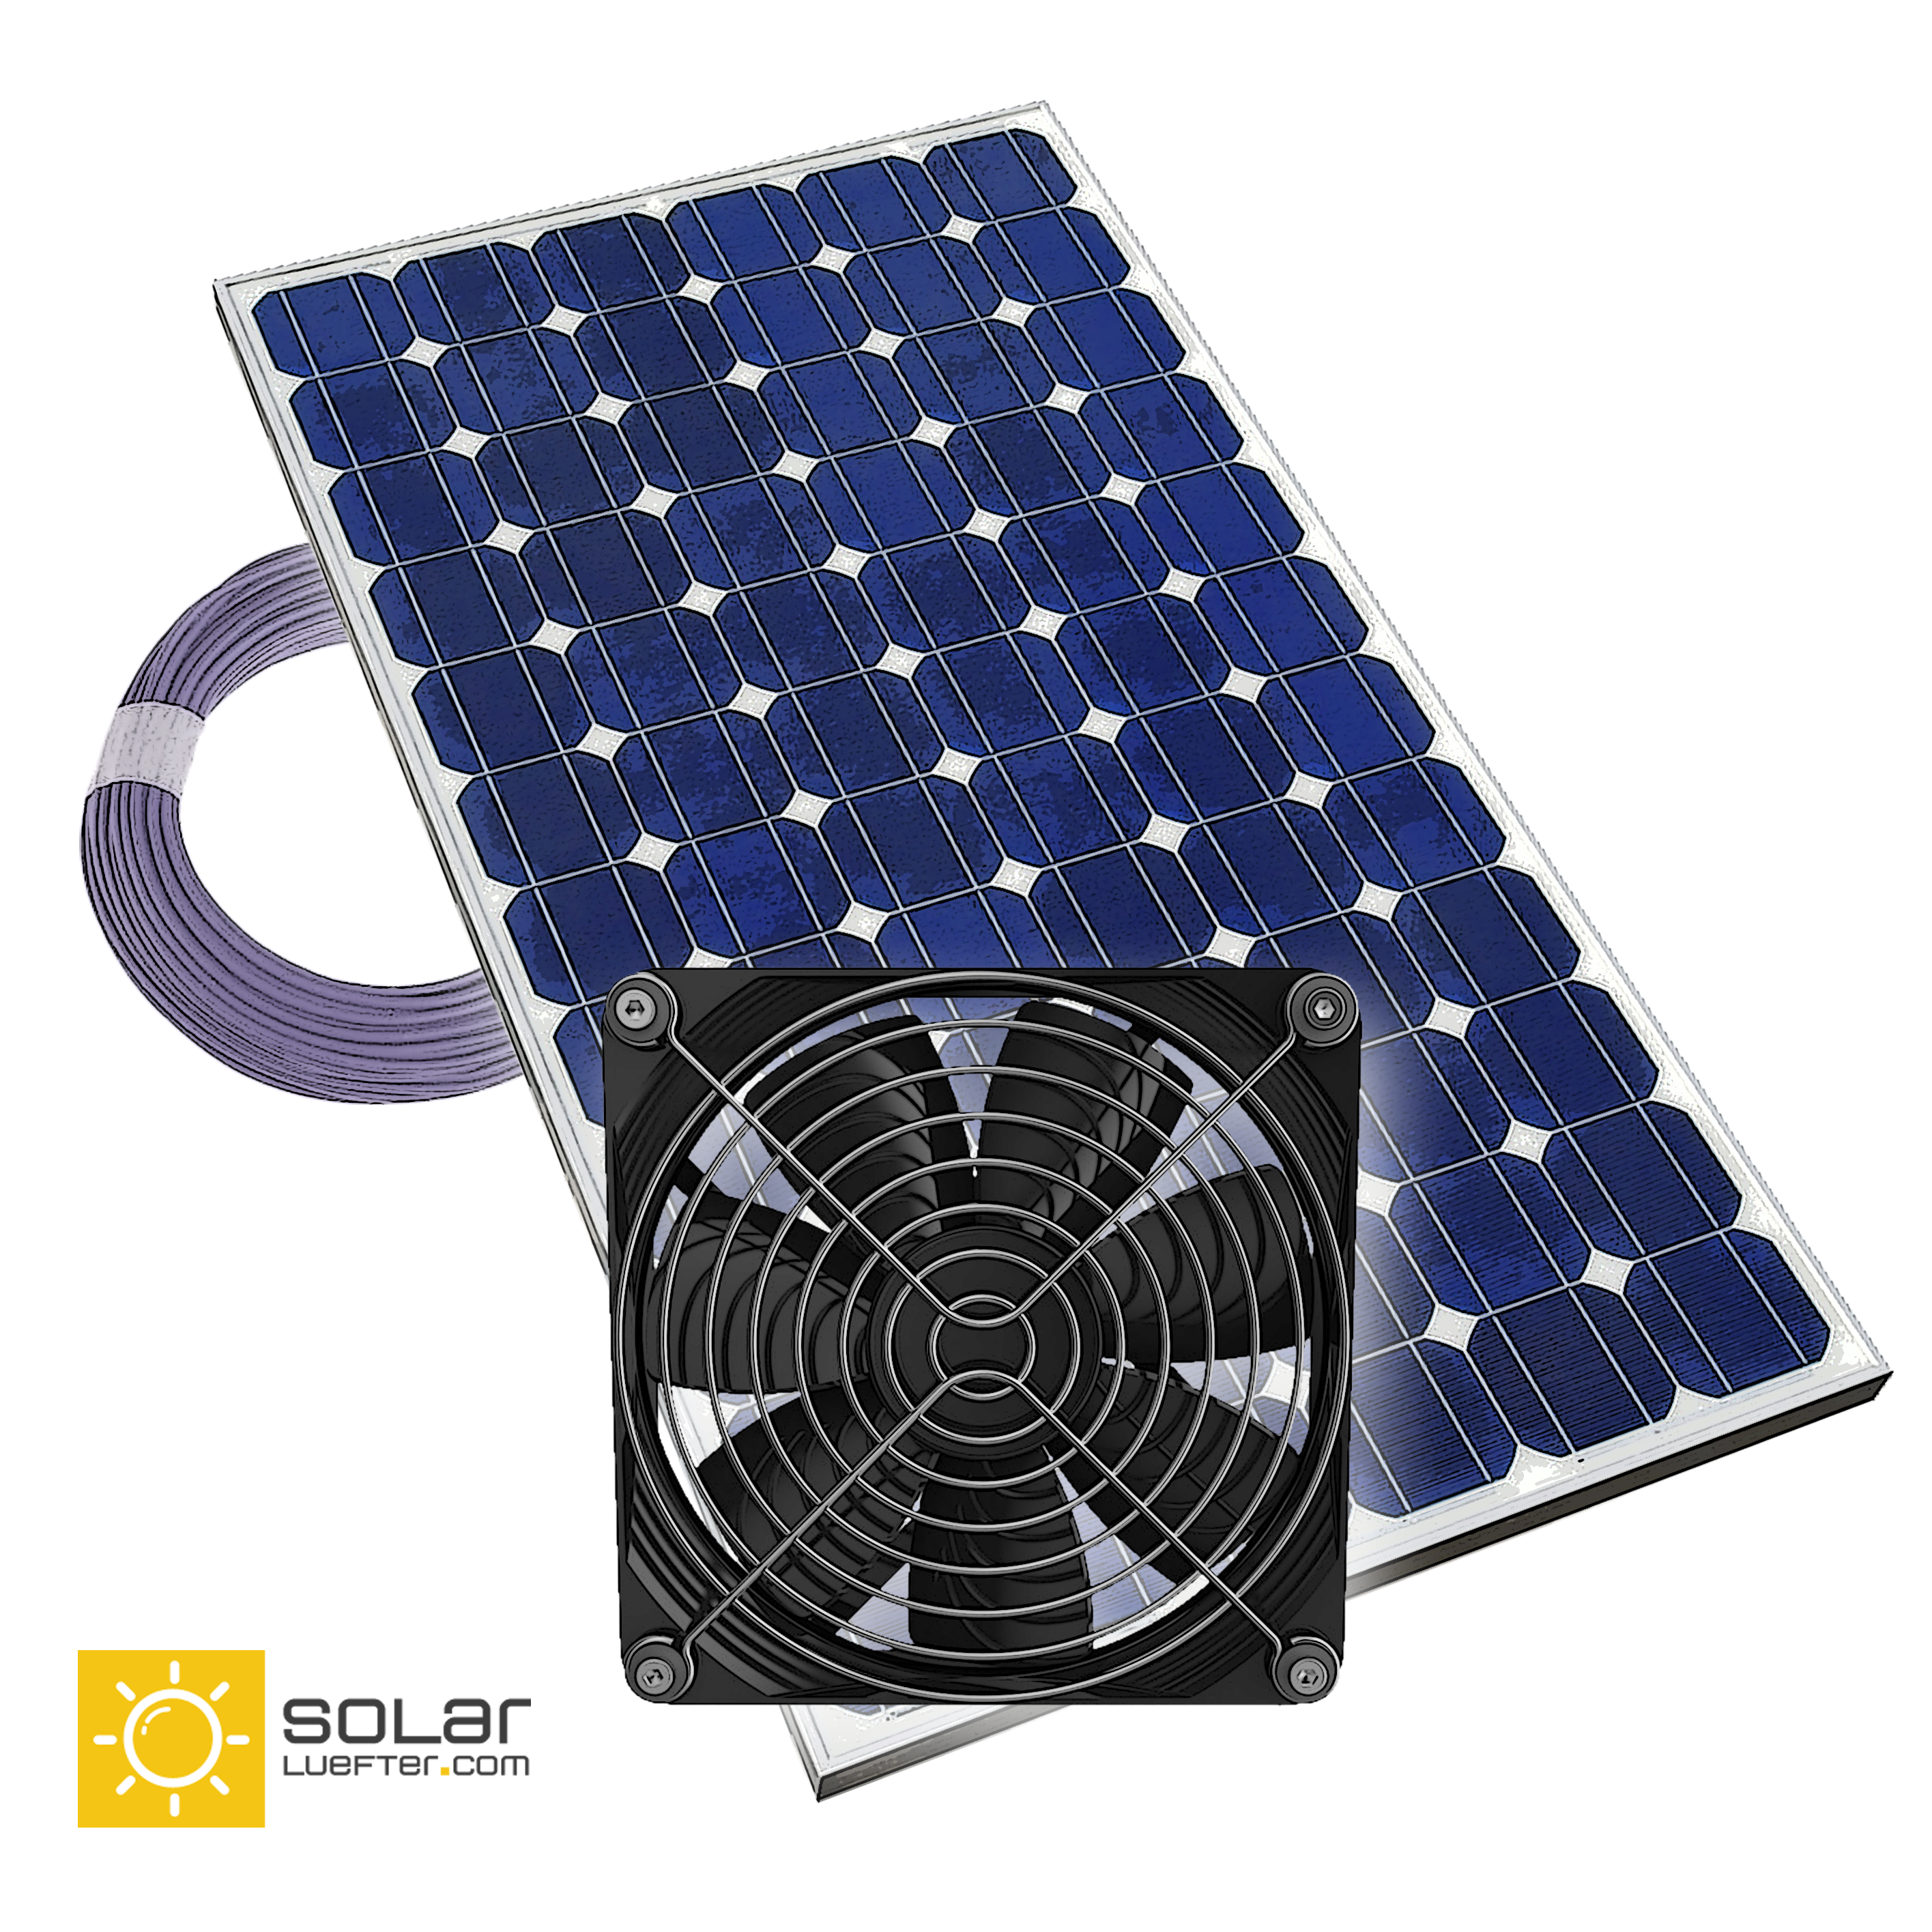 SHOP -  - SOLAR LÜFTER - Gewächshauslüfter, solar  betriebene Lüfter und mehr